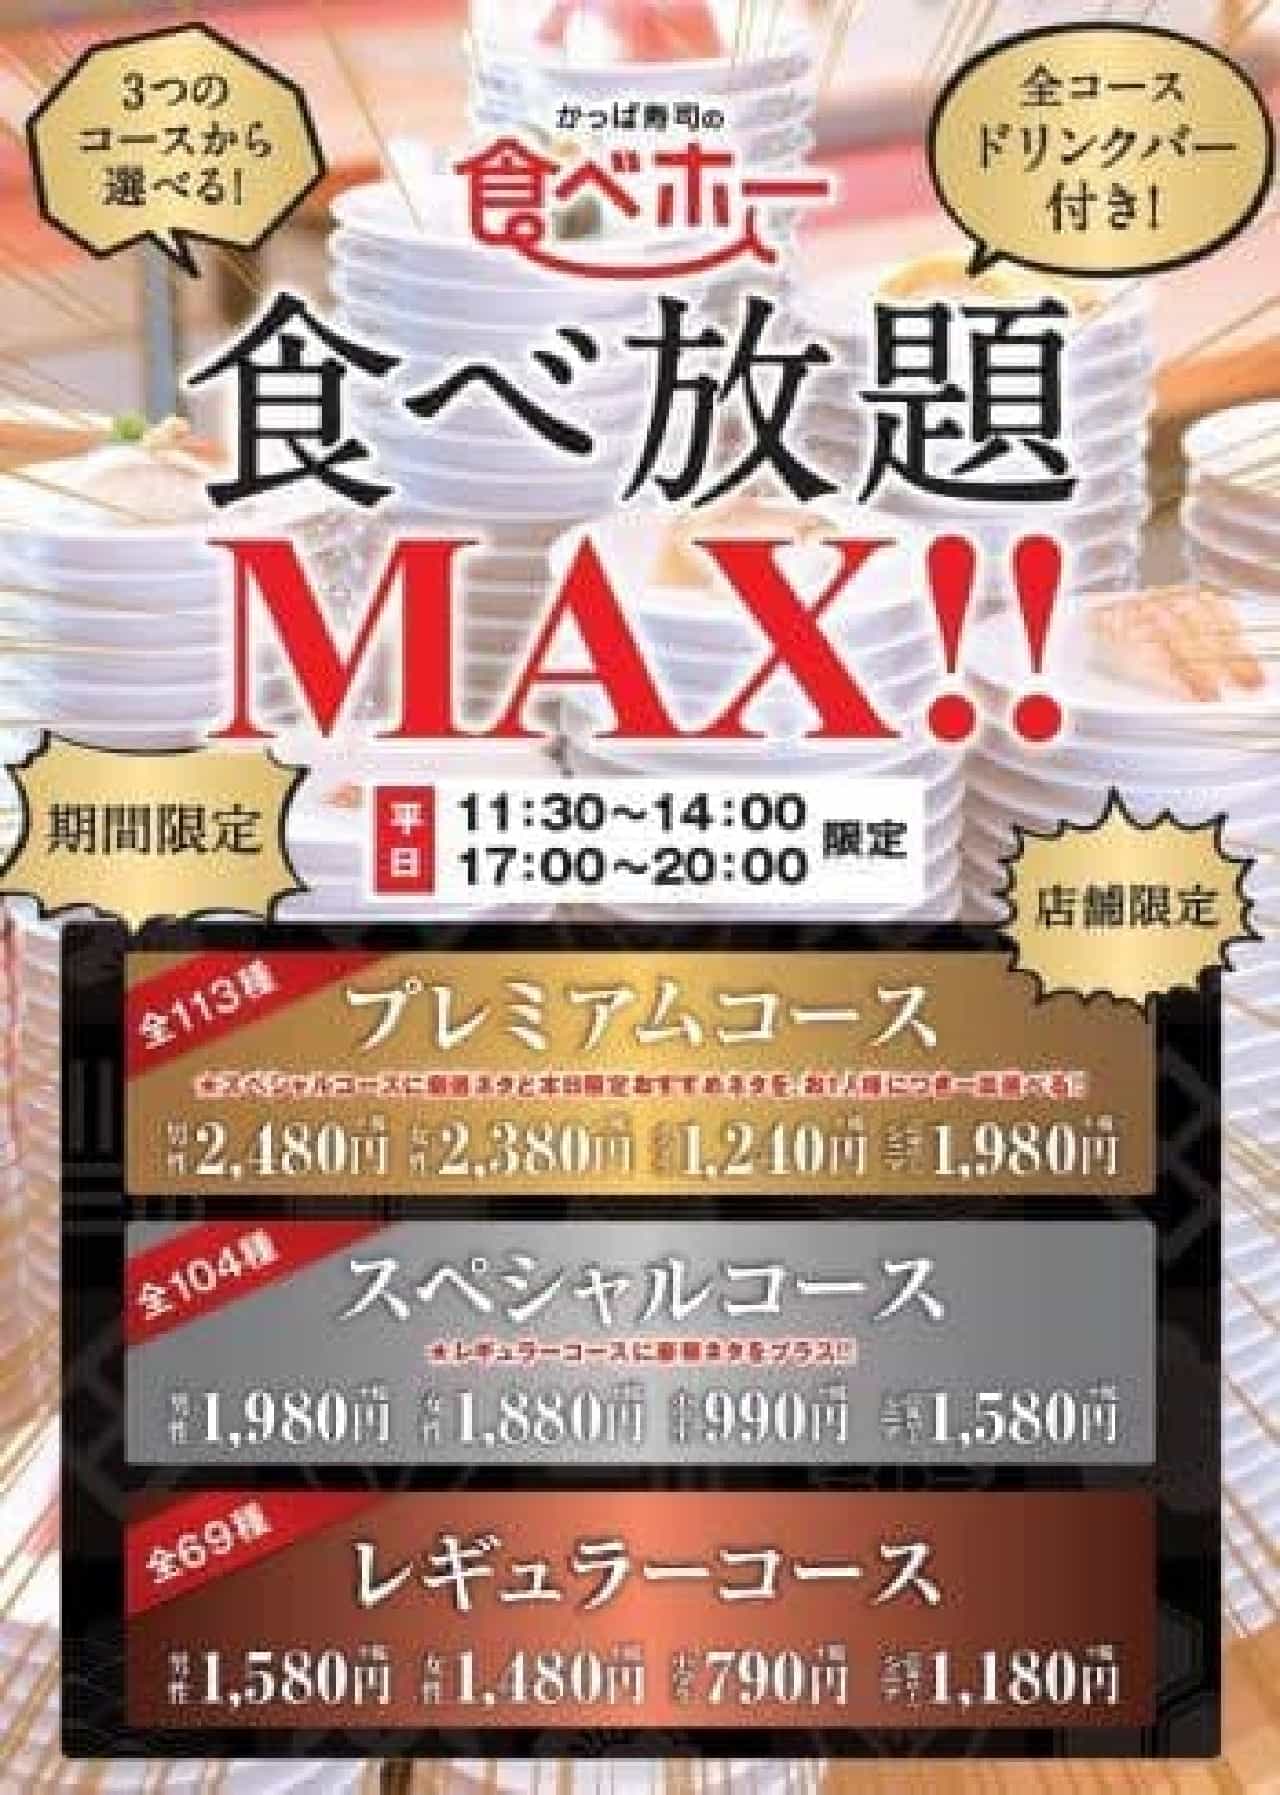 Kappa Sushi "Eat Ho MAX !!" Expands Target Stores